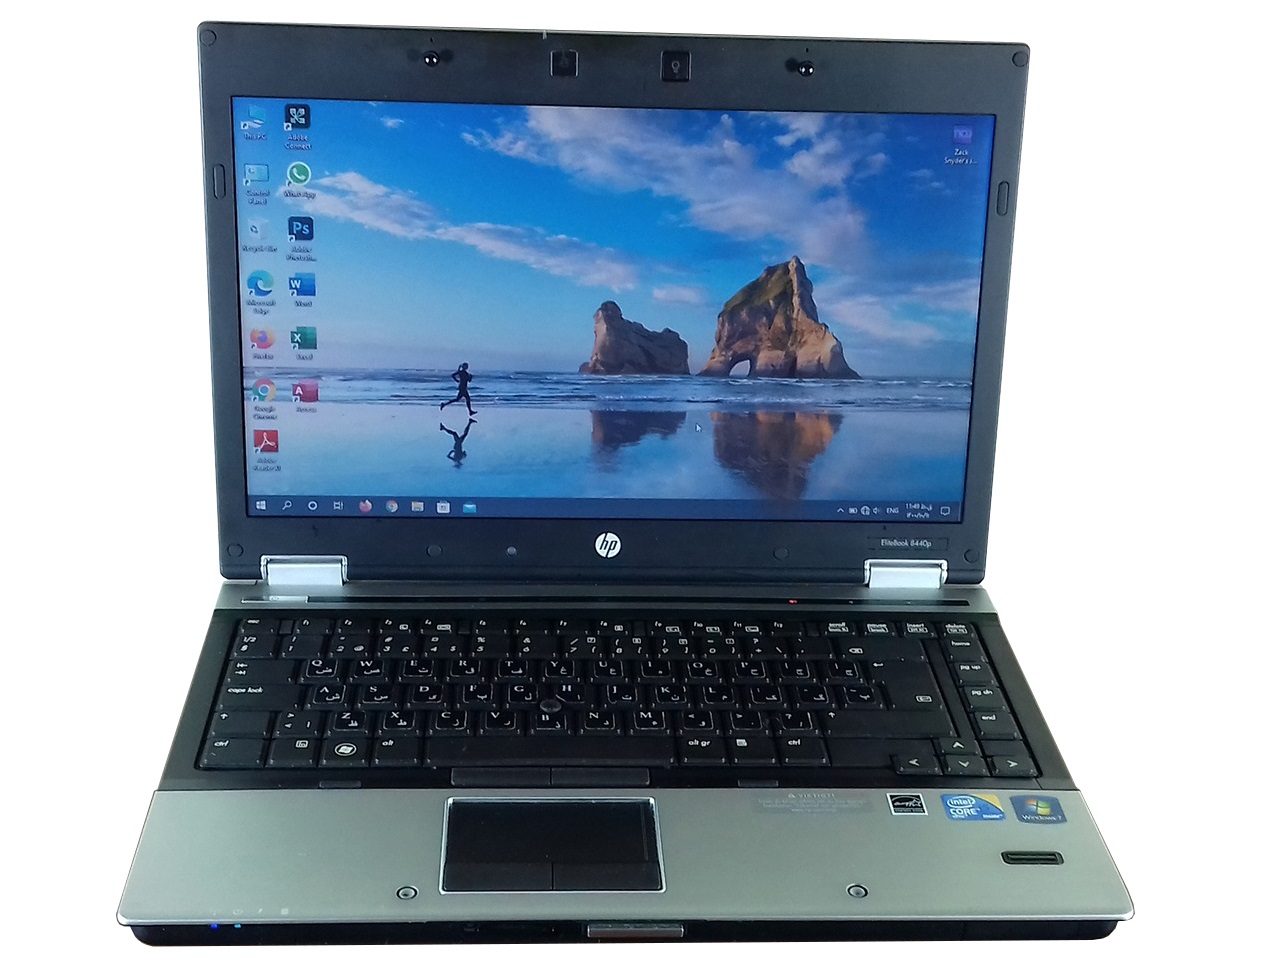 لپ تاپ دست دوم HP مدل EliteBook 8440p